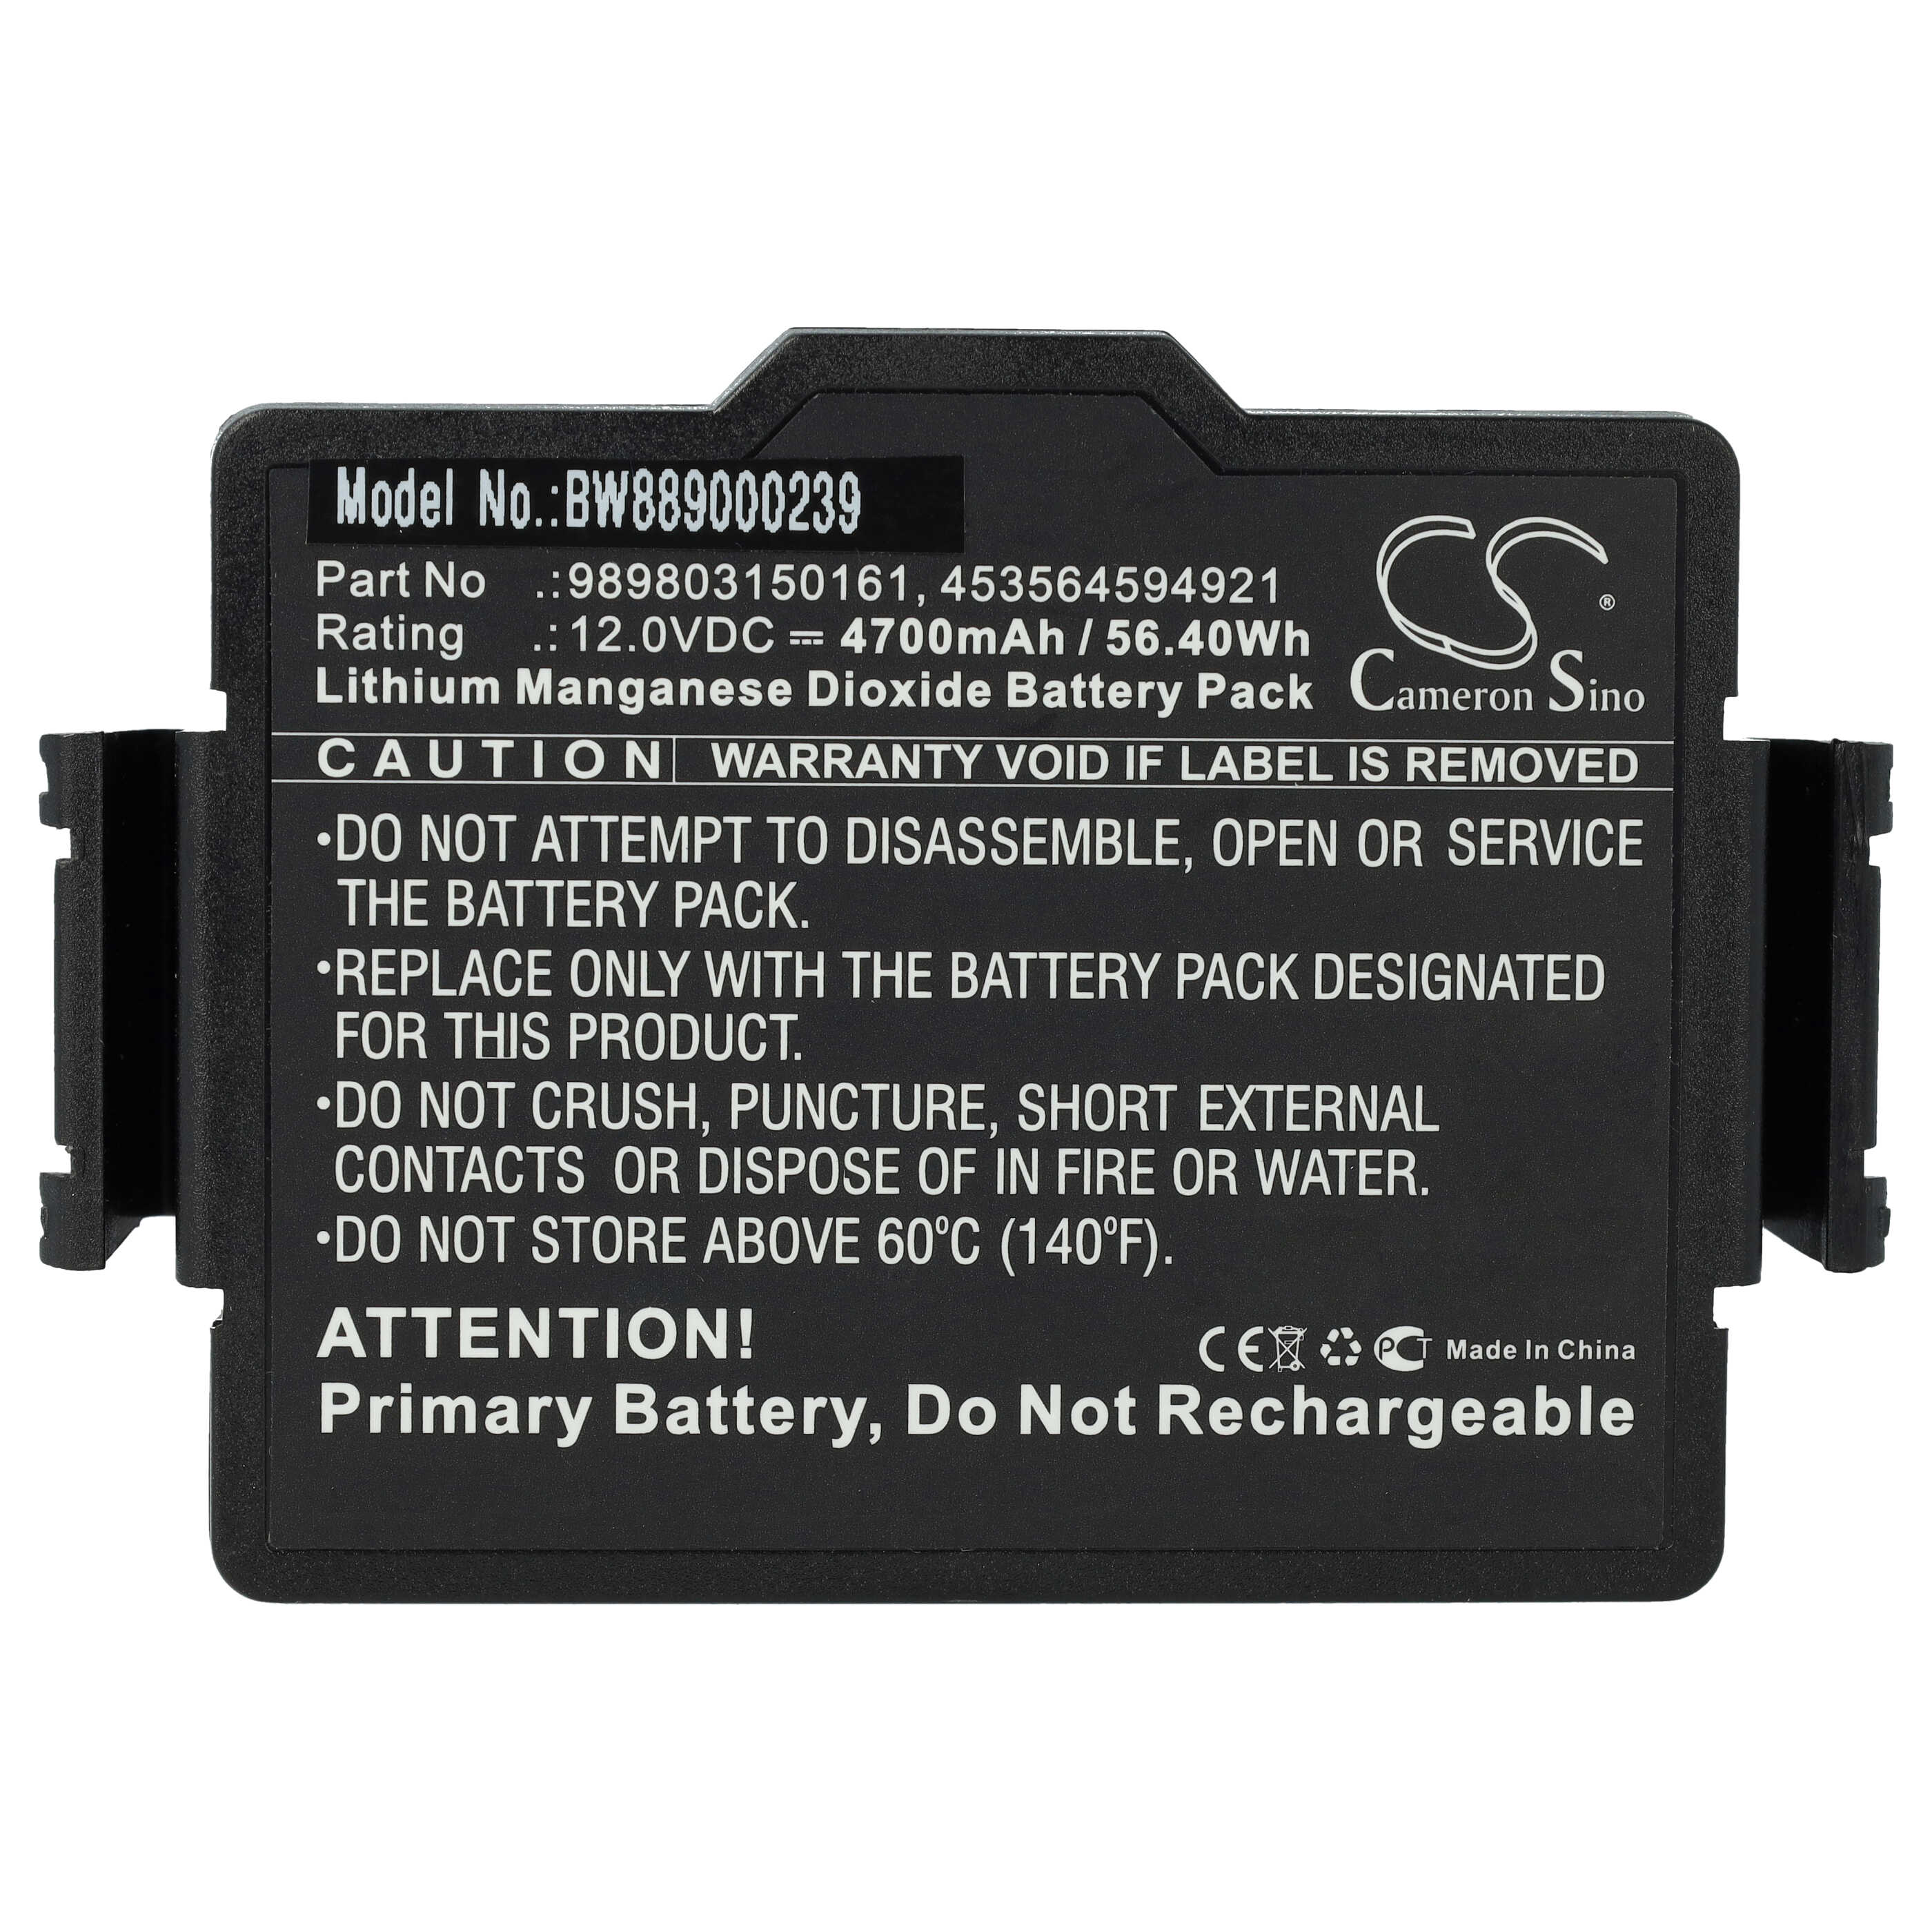 Batterie als Ersatz für Philips 453564288031, 453564594921, 989803150161 - 4700mAh 12V Li-MnO2